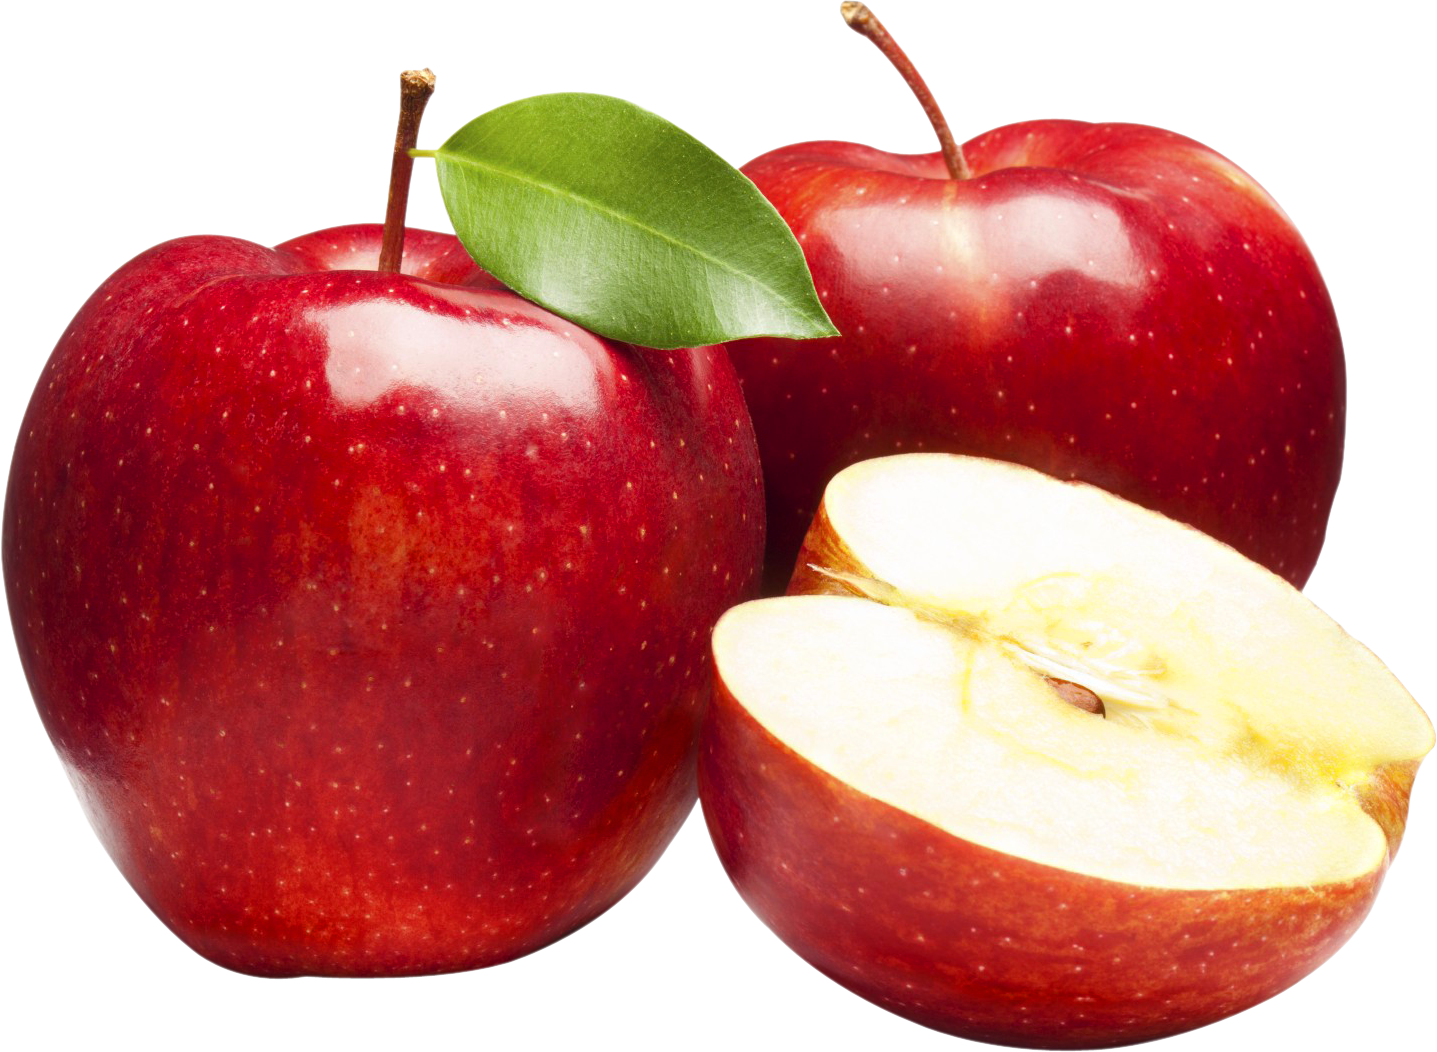 빨간 사과 과일 PNG 고품질 이미지